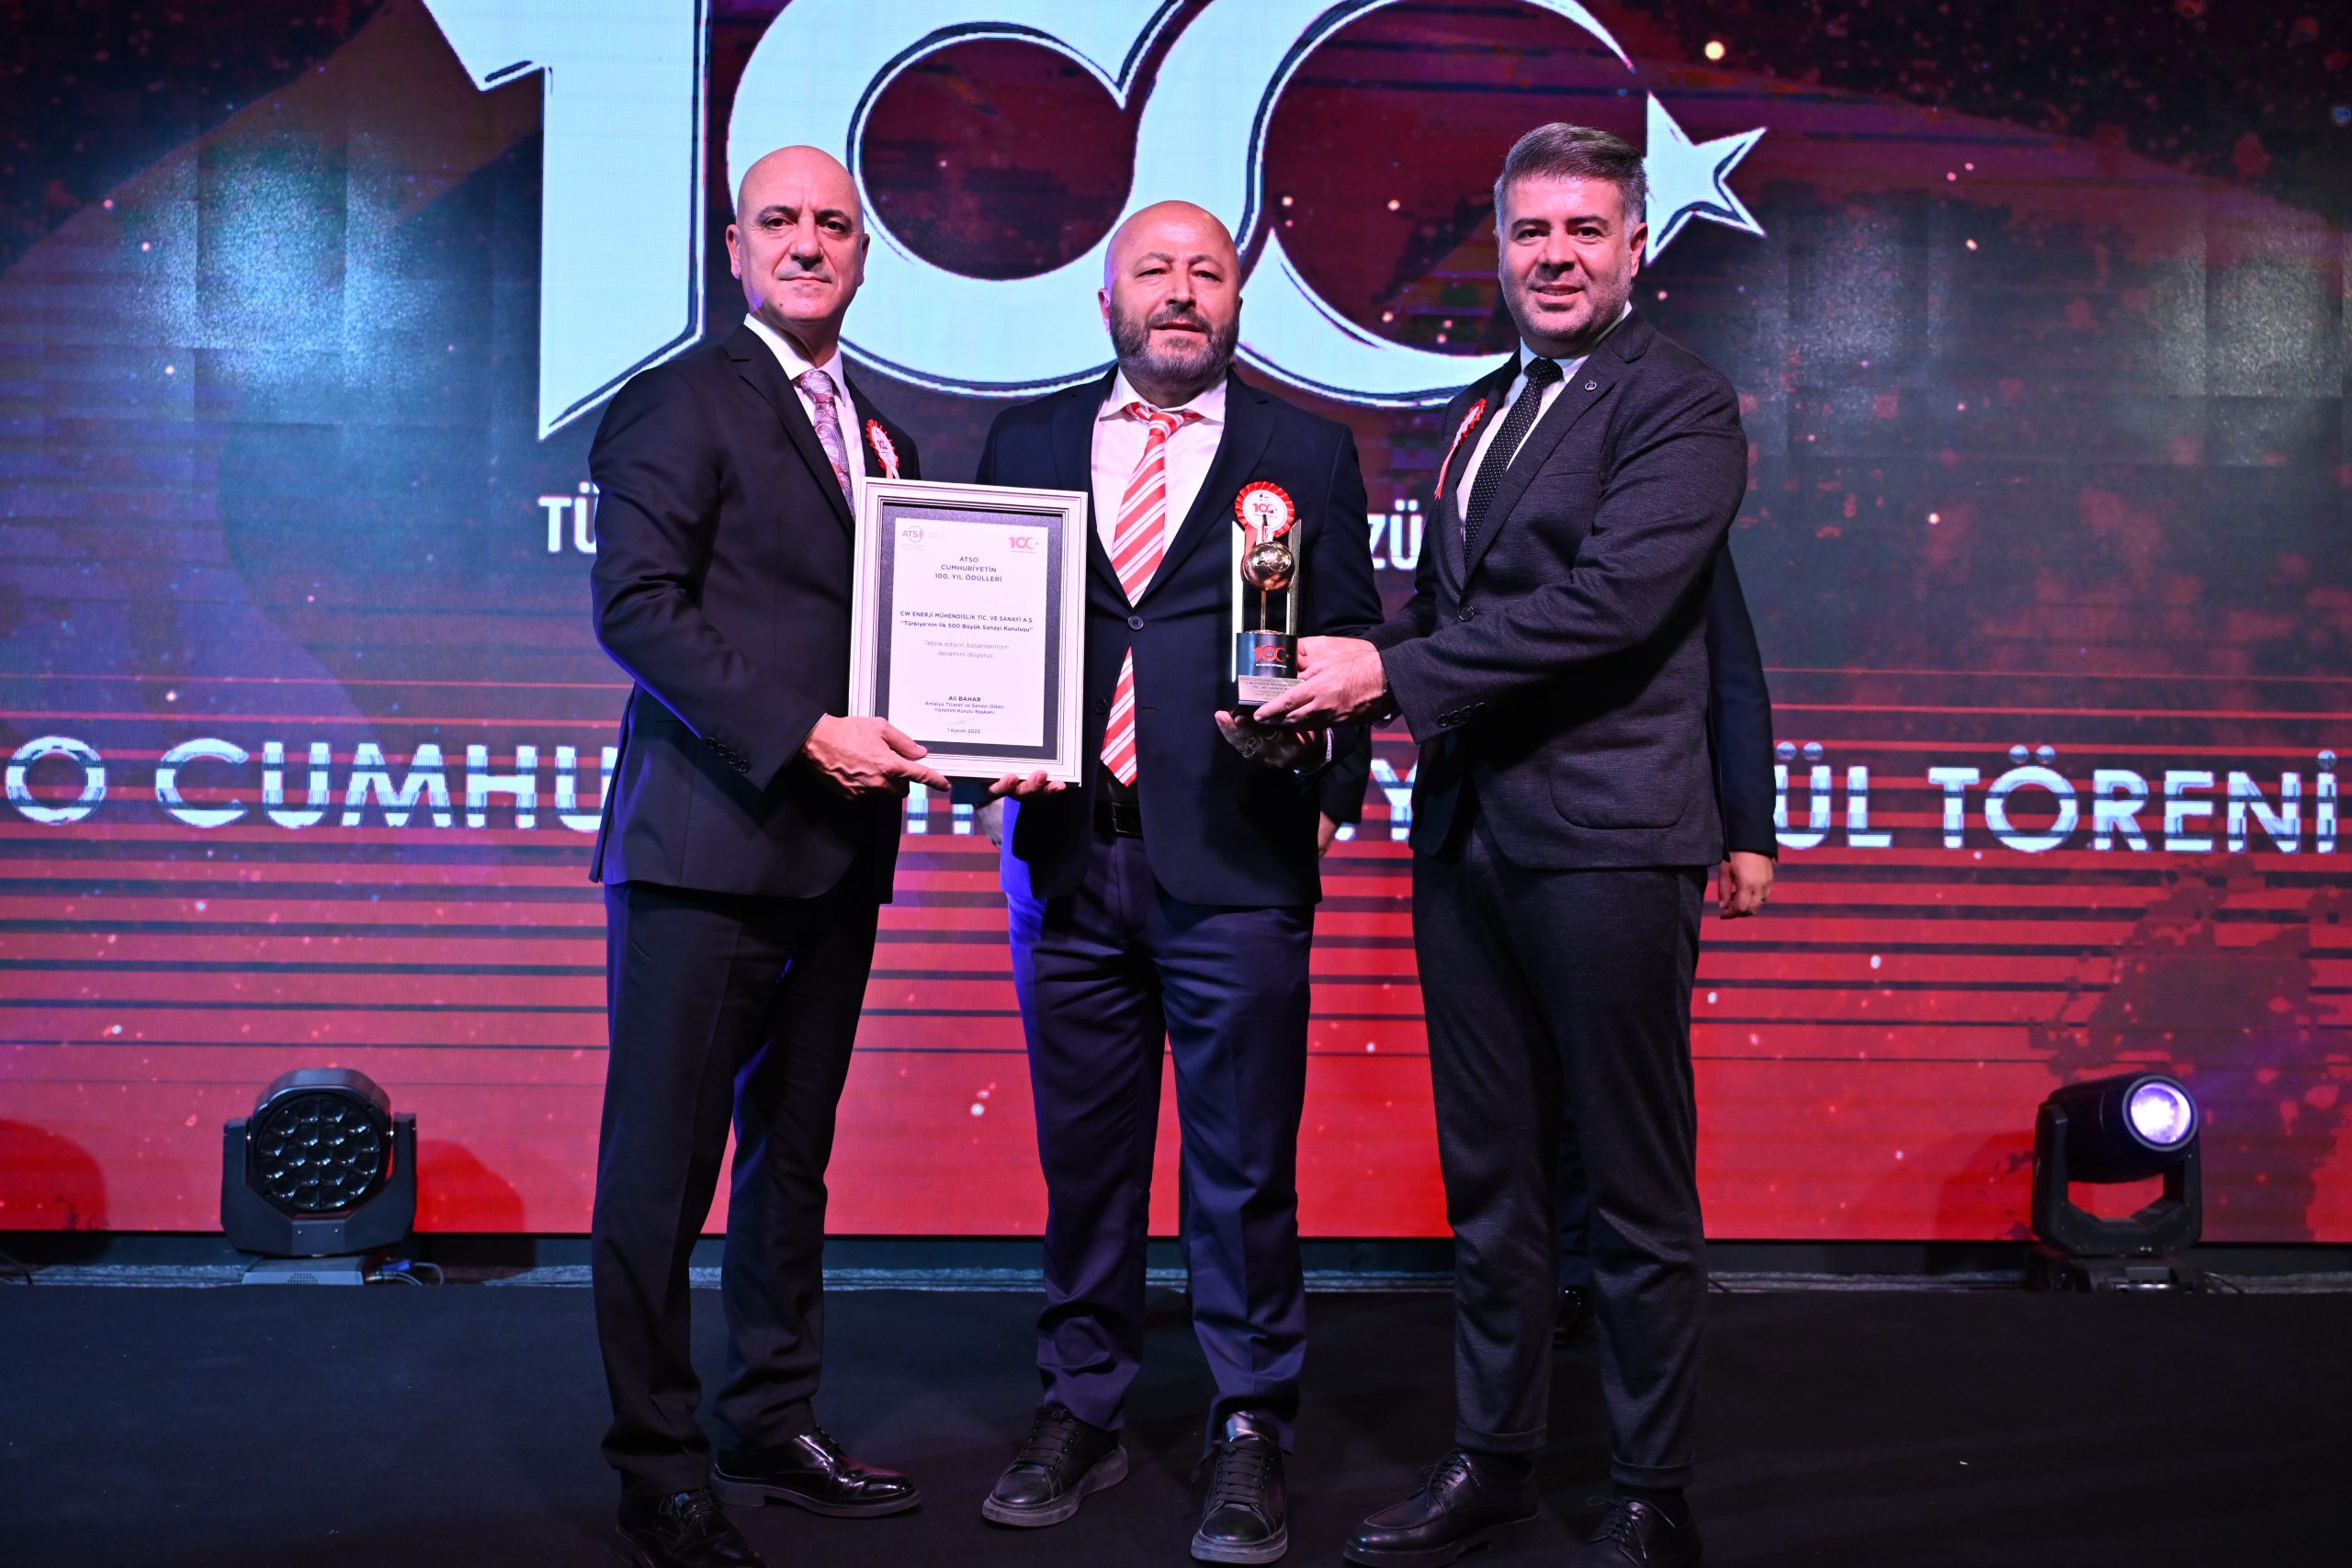 Antalya Ticaret Ve Sanayi Odası’ndan CW Enerji’ye Ödül